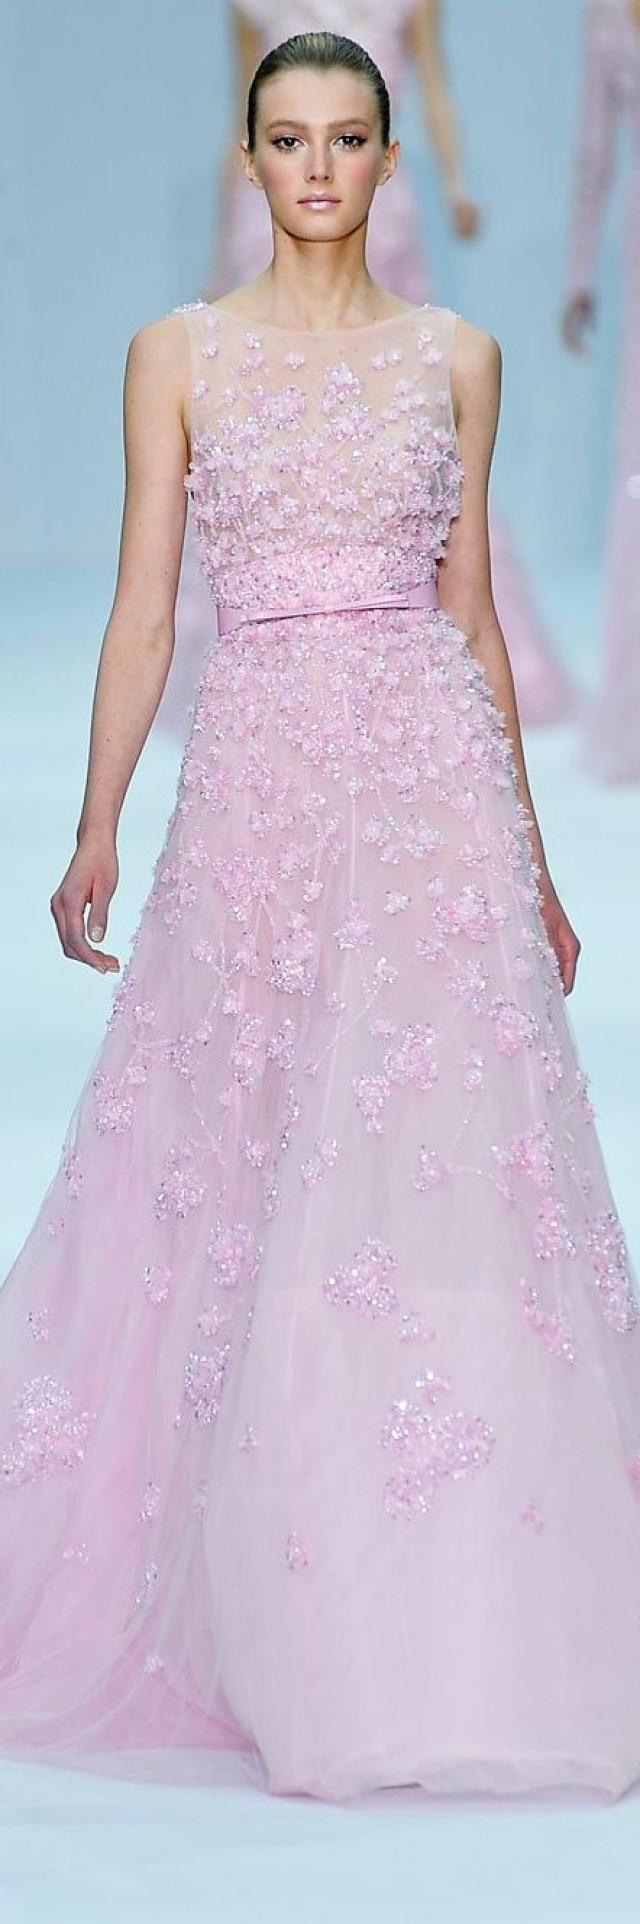 Pastell Hochzeit - Kleider .. Pastell-Rosa #2075181